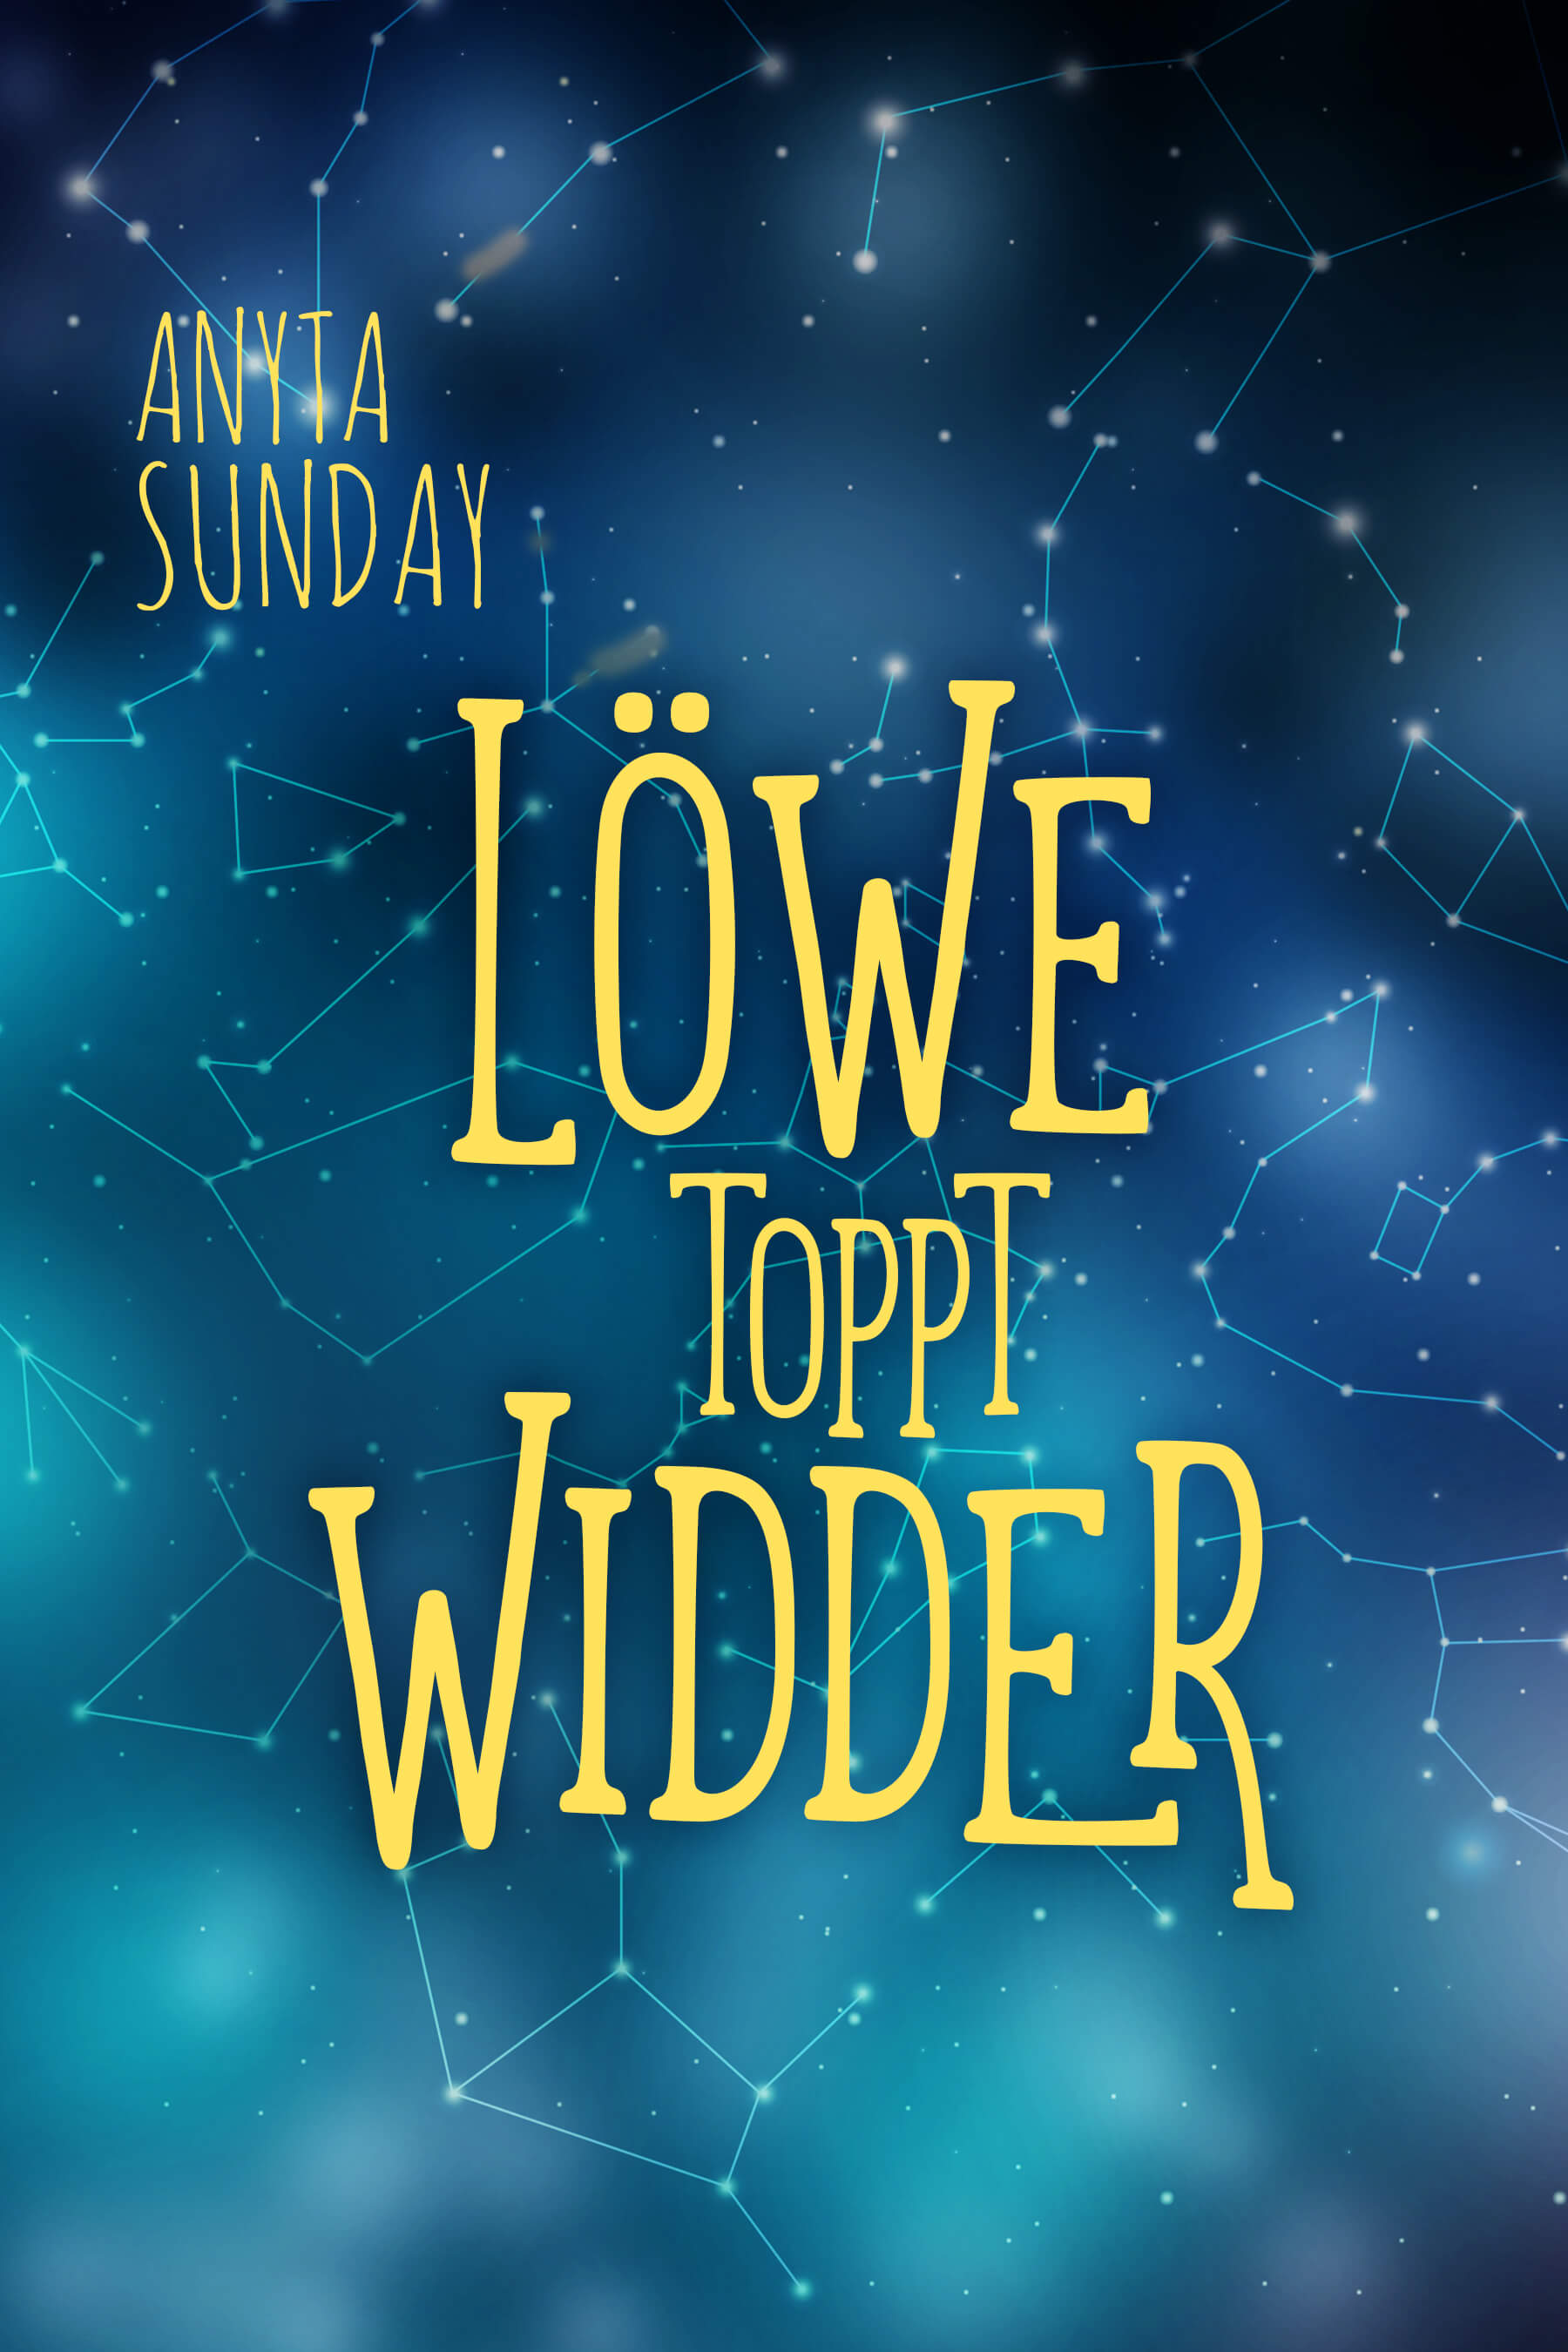 Löwe toppt Widder, eine erotische Kurzgeschichte von Anyta Sunday